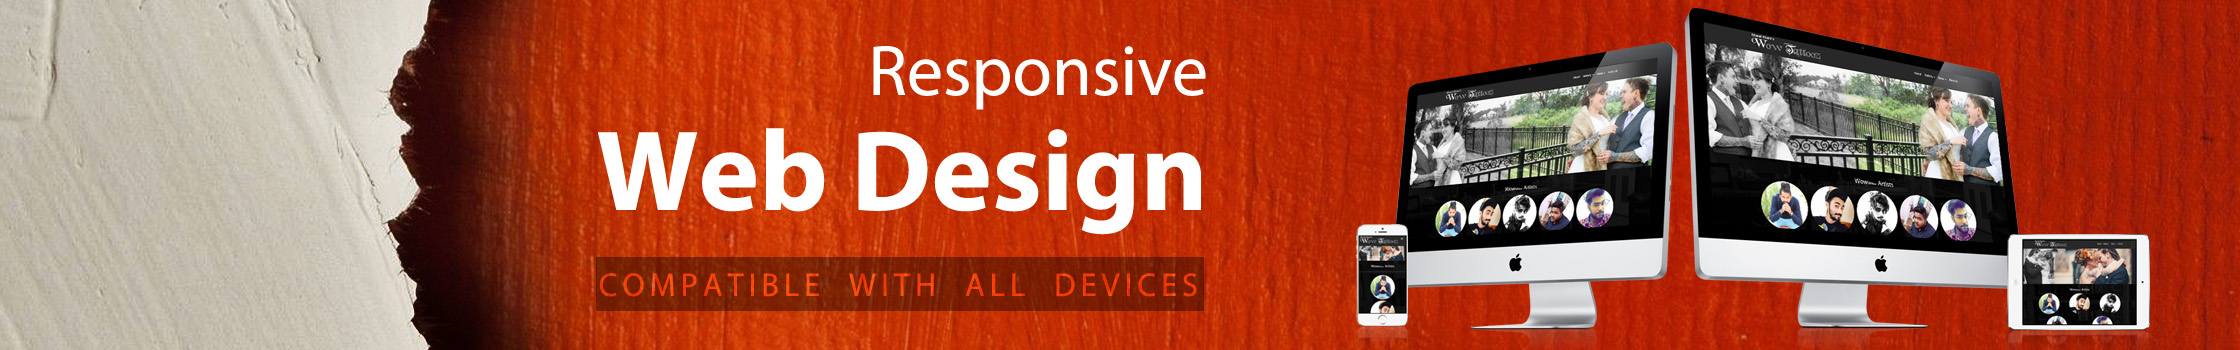 Responsive Website Design in Mumbai, India